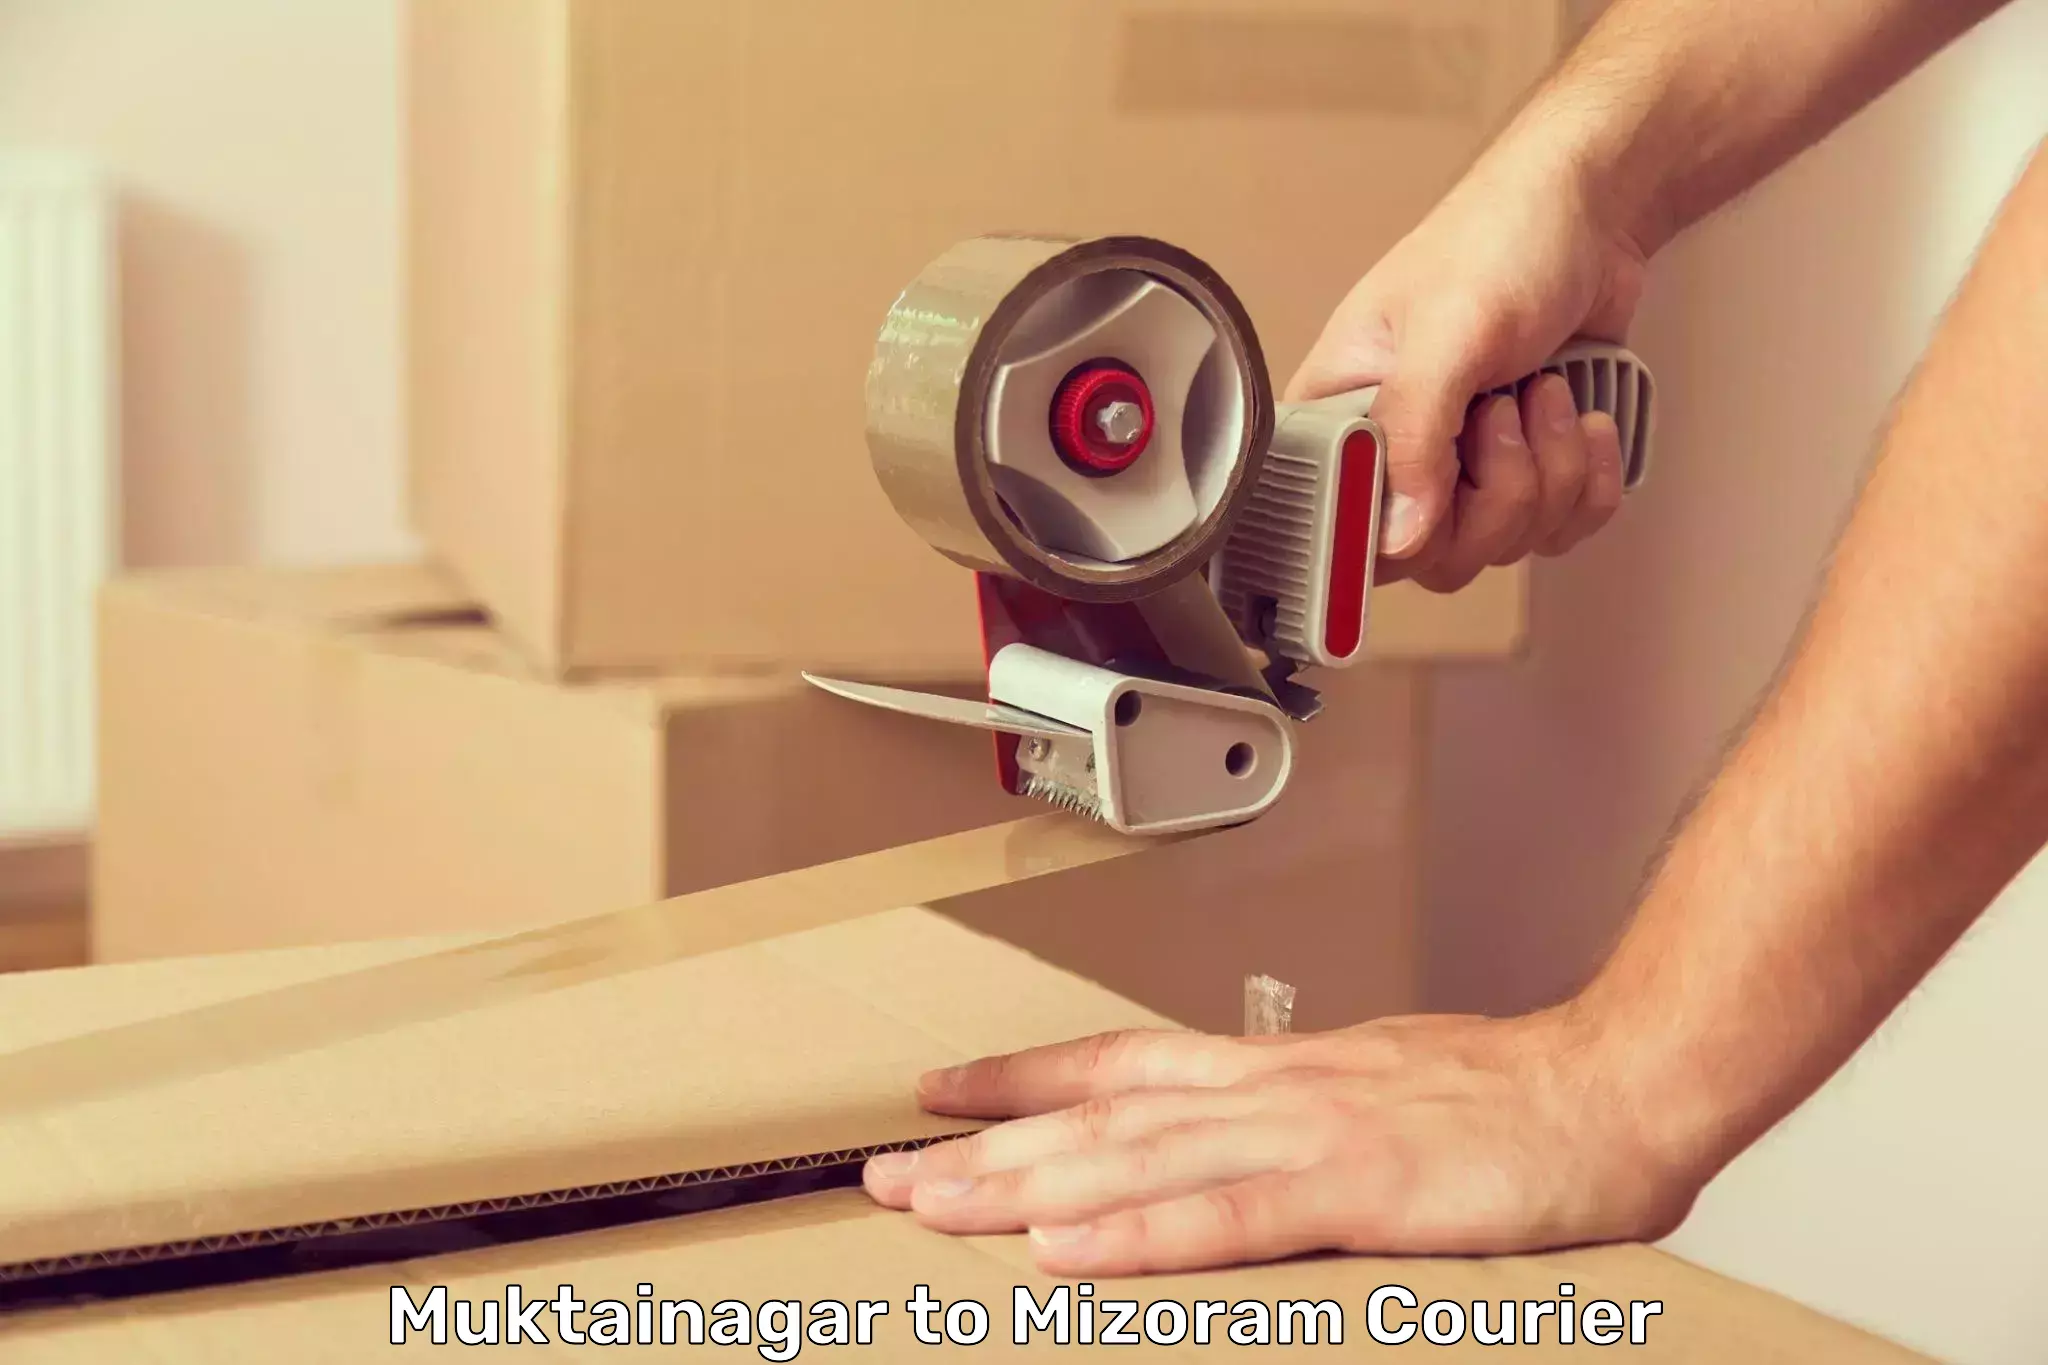 Express courier capabilities Muktainagar to Mizoram